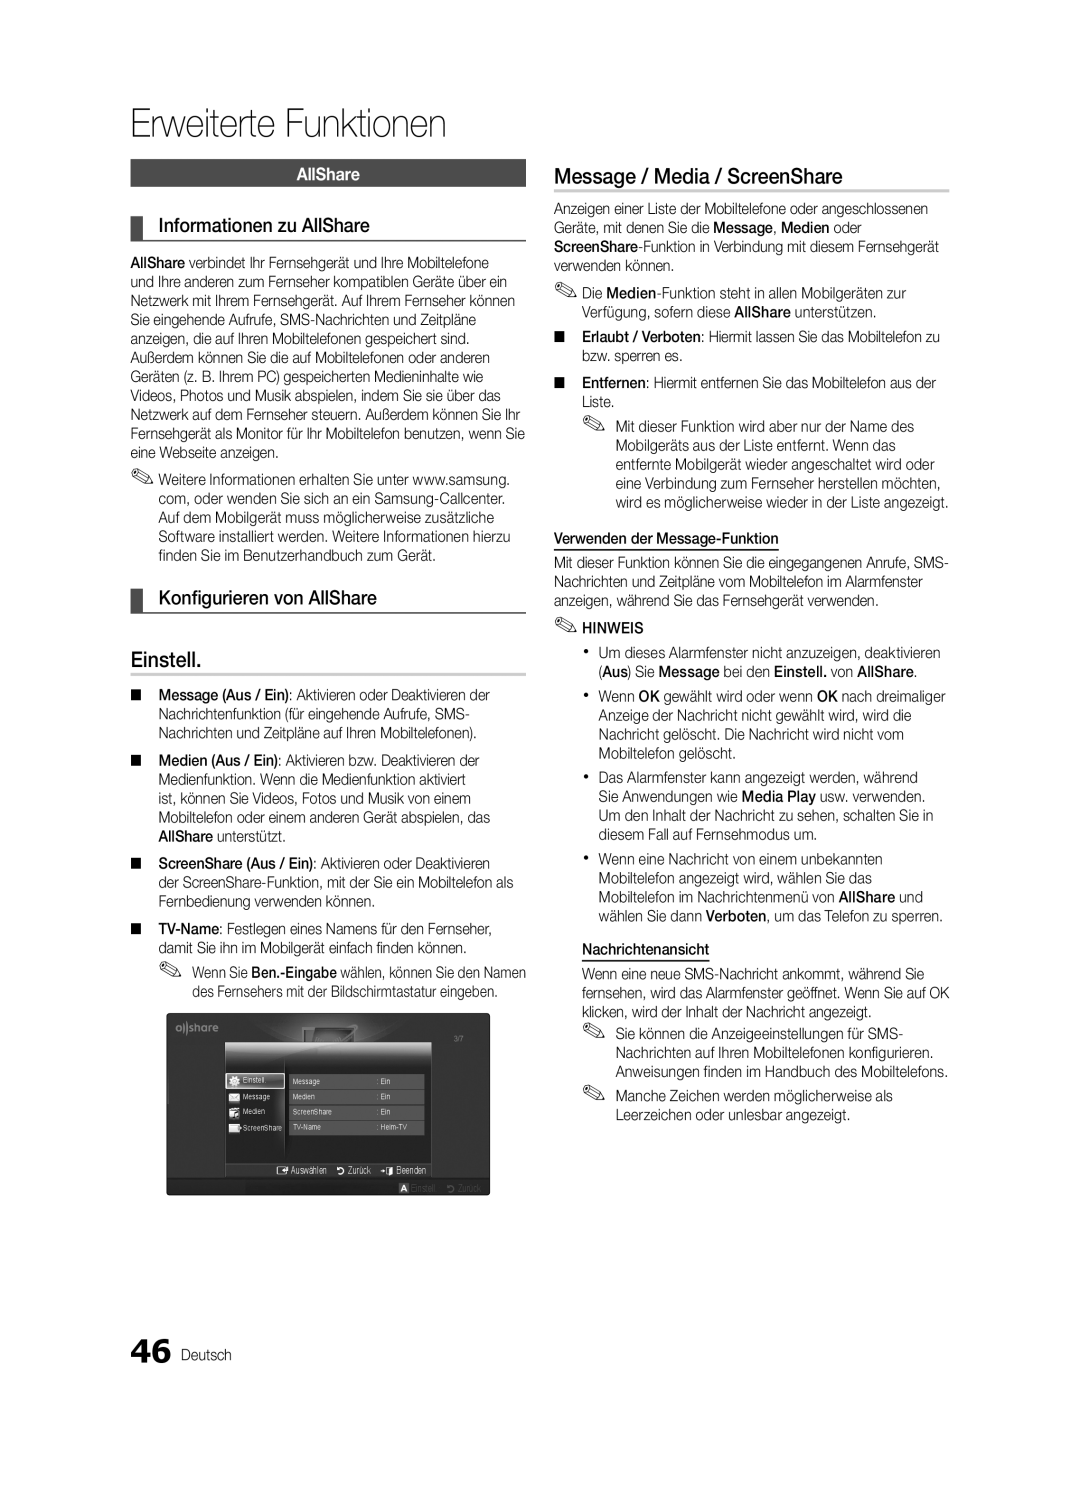 Samsung UE40C6500UPXZT manual Informationen zu AllShare, Konfigurieren von AllShare, Verwenden der Message-Funktion 